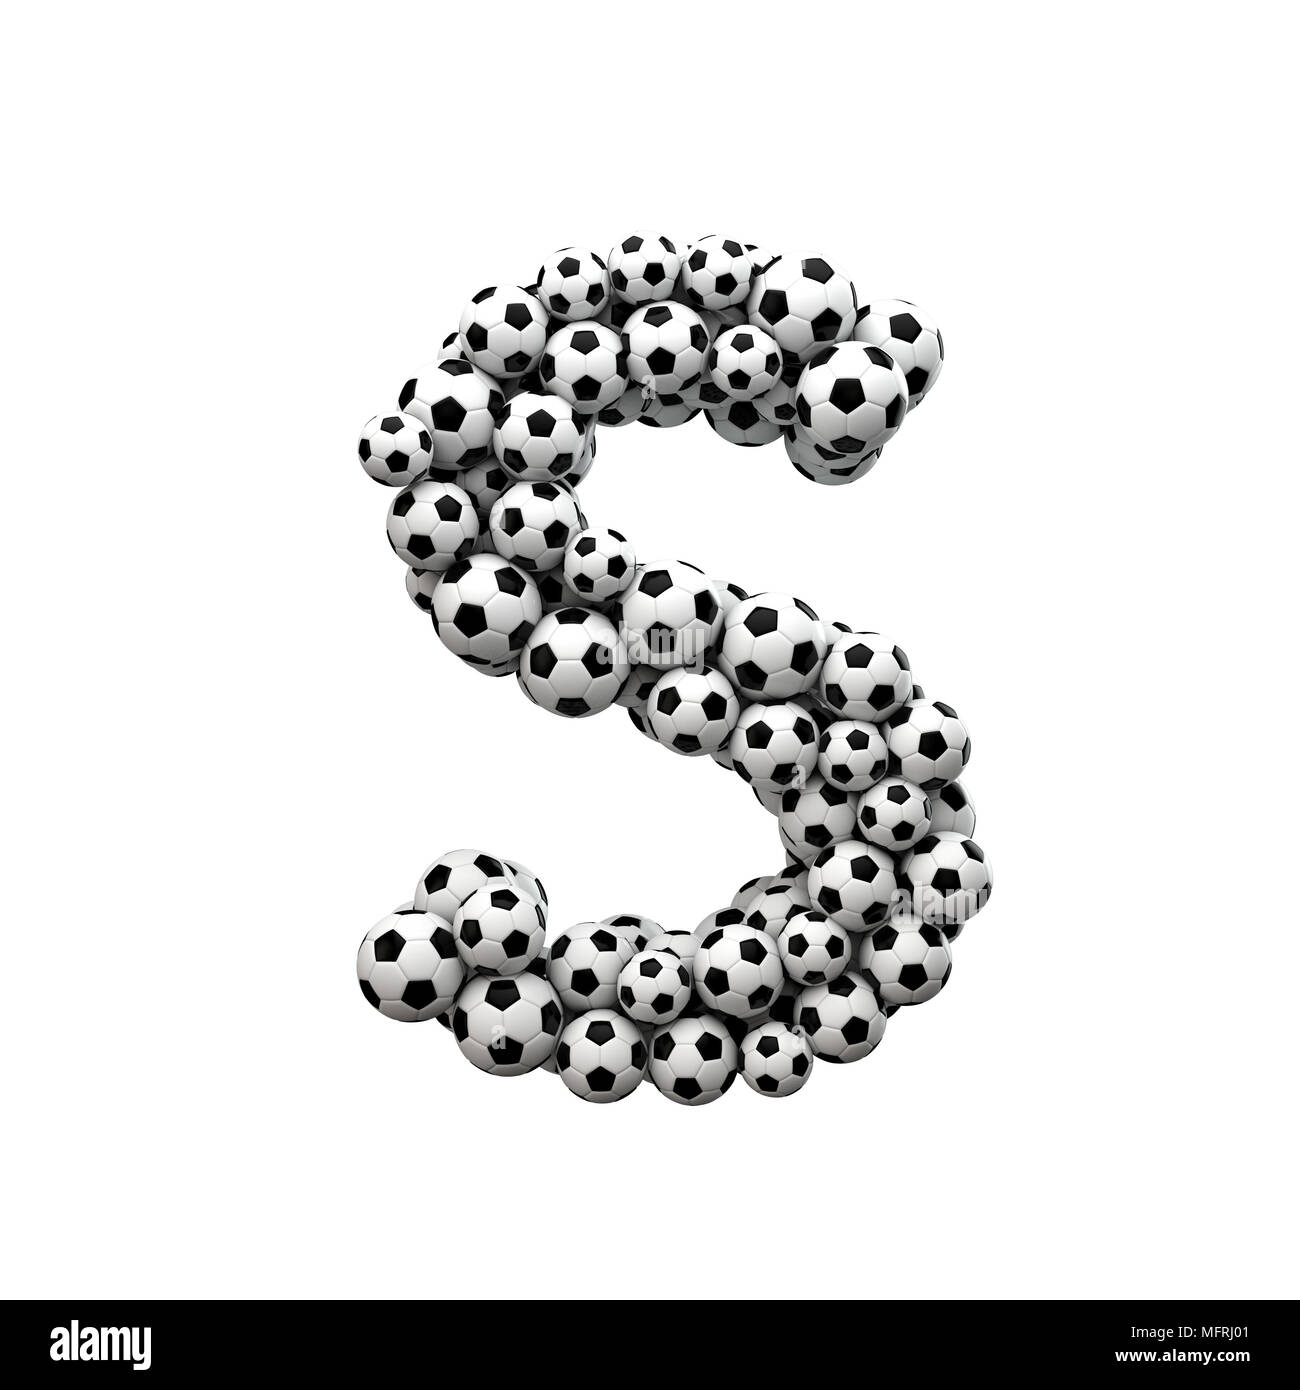 Letra S mayúscula font hechas a partir de una colección de balones de fútbol. 3D Rendering Foto de stock